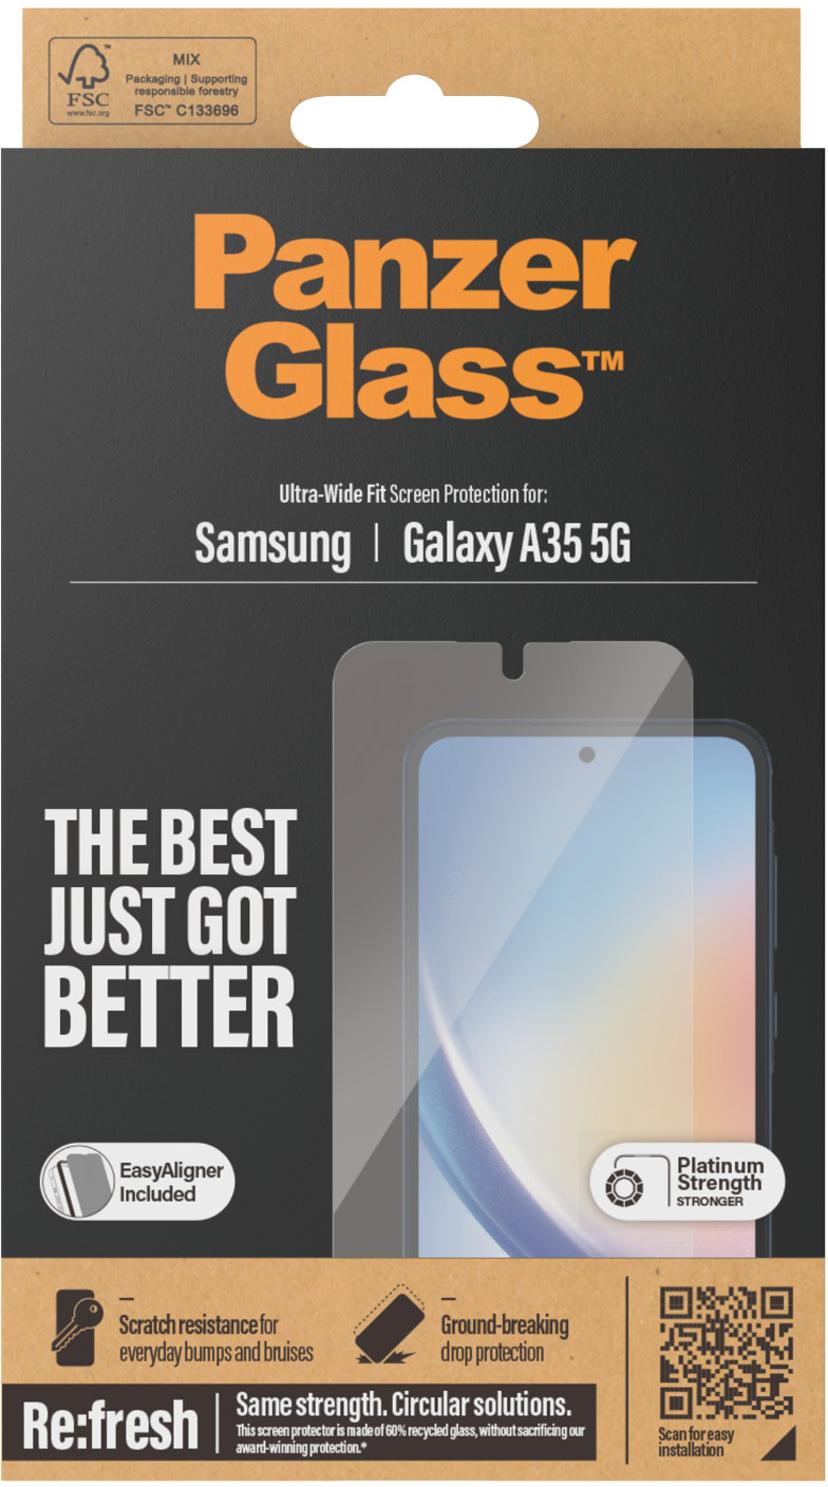 Panzerglass Ultra-Wide Fit Samsung Galaxy A35 5G